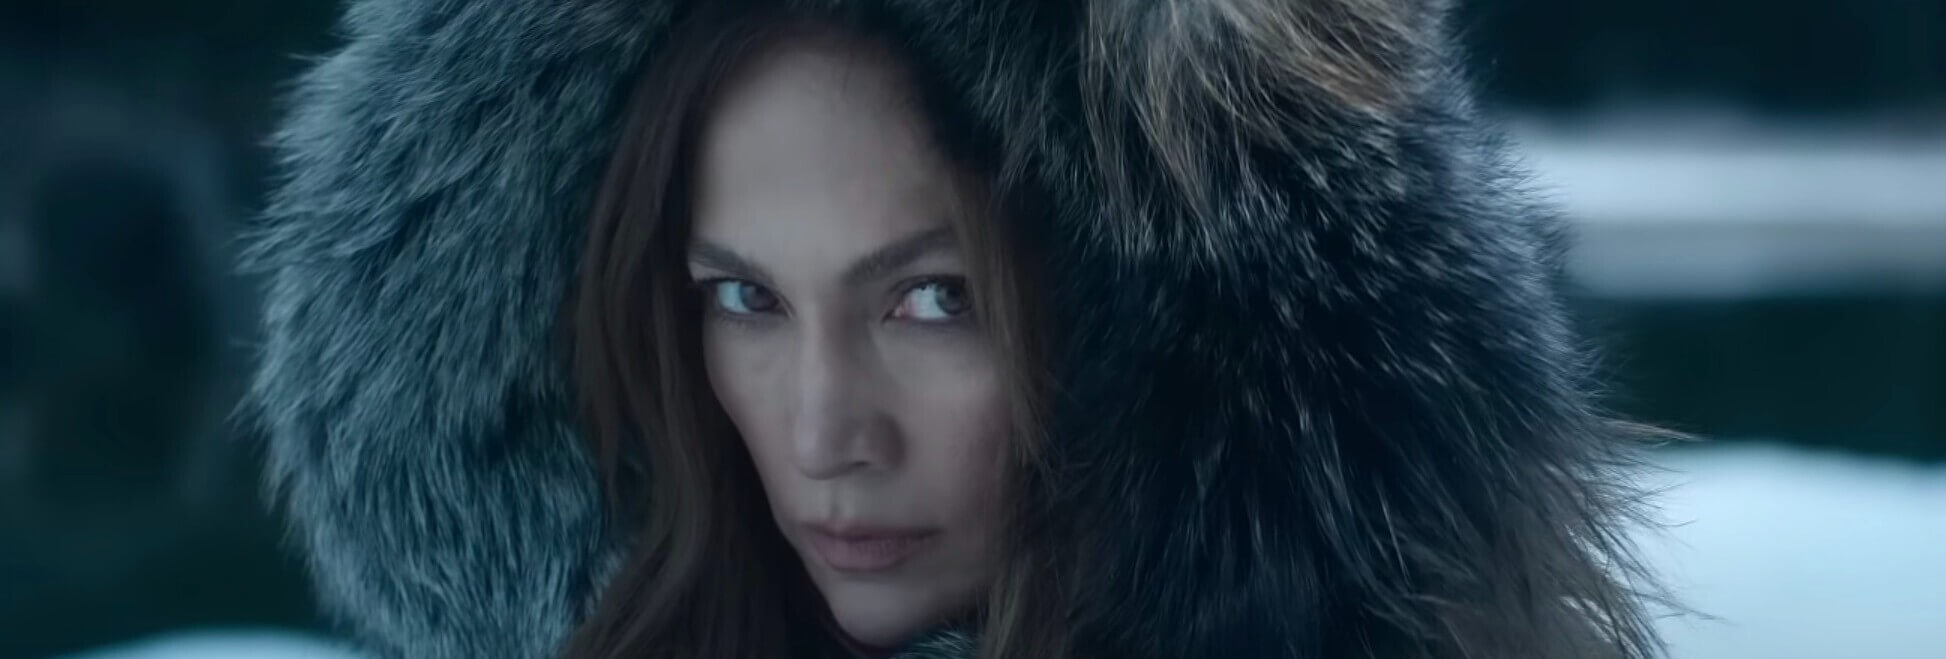 Crítica: 'La madre', con Jennifer Lopez, es una película de acción sin vida de Netflix